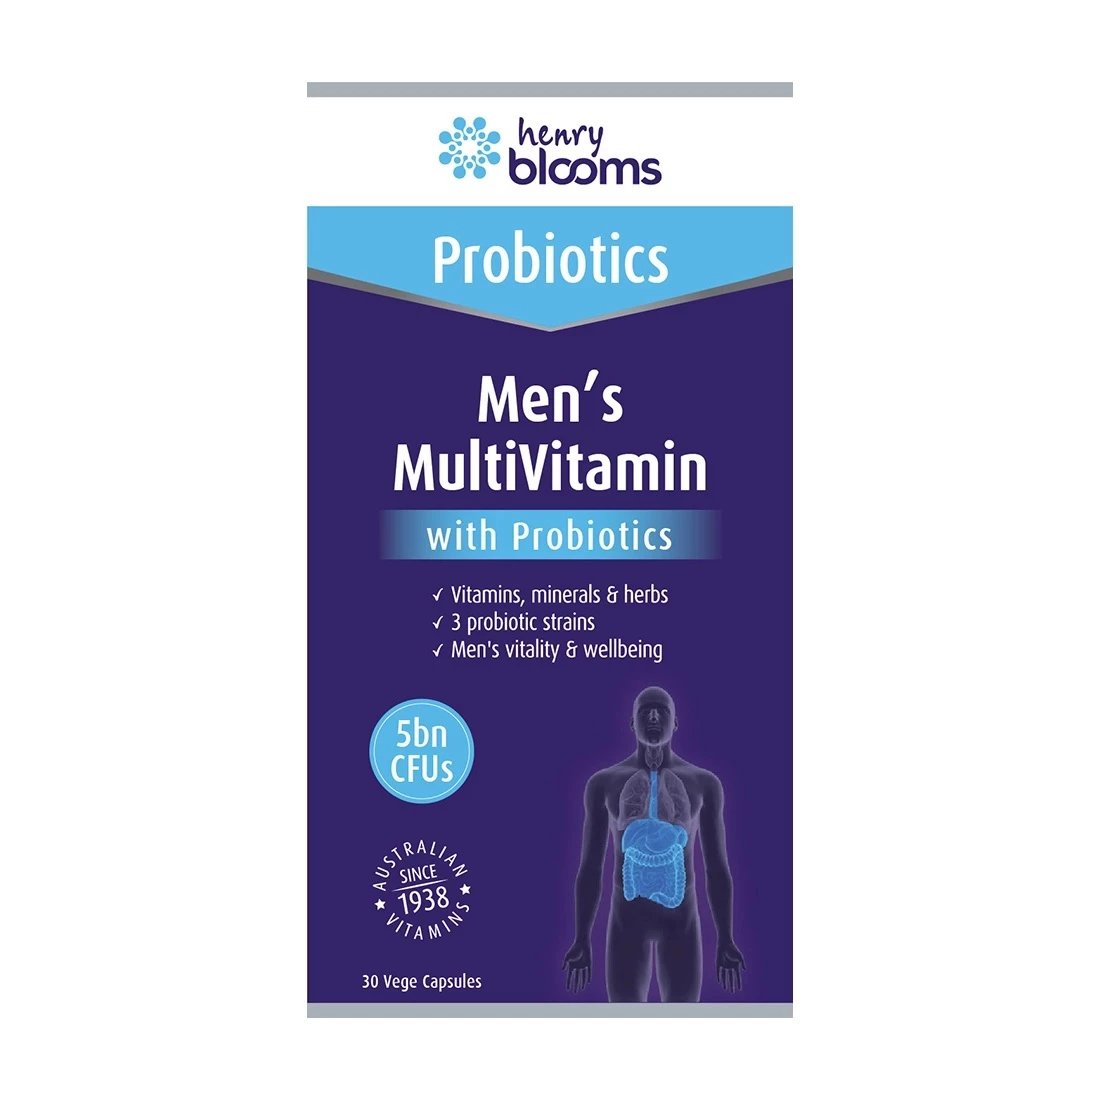 Henry Blooms Men's Multivitamin With Probiotics - Bổ sung vitamin tổng hợp và lợi khuẩn cho nam